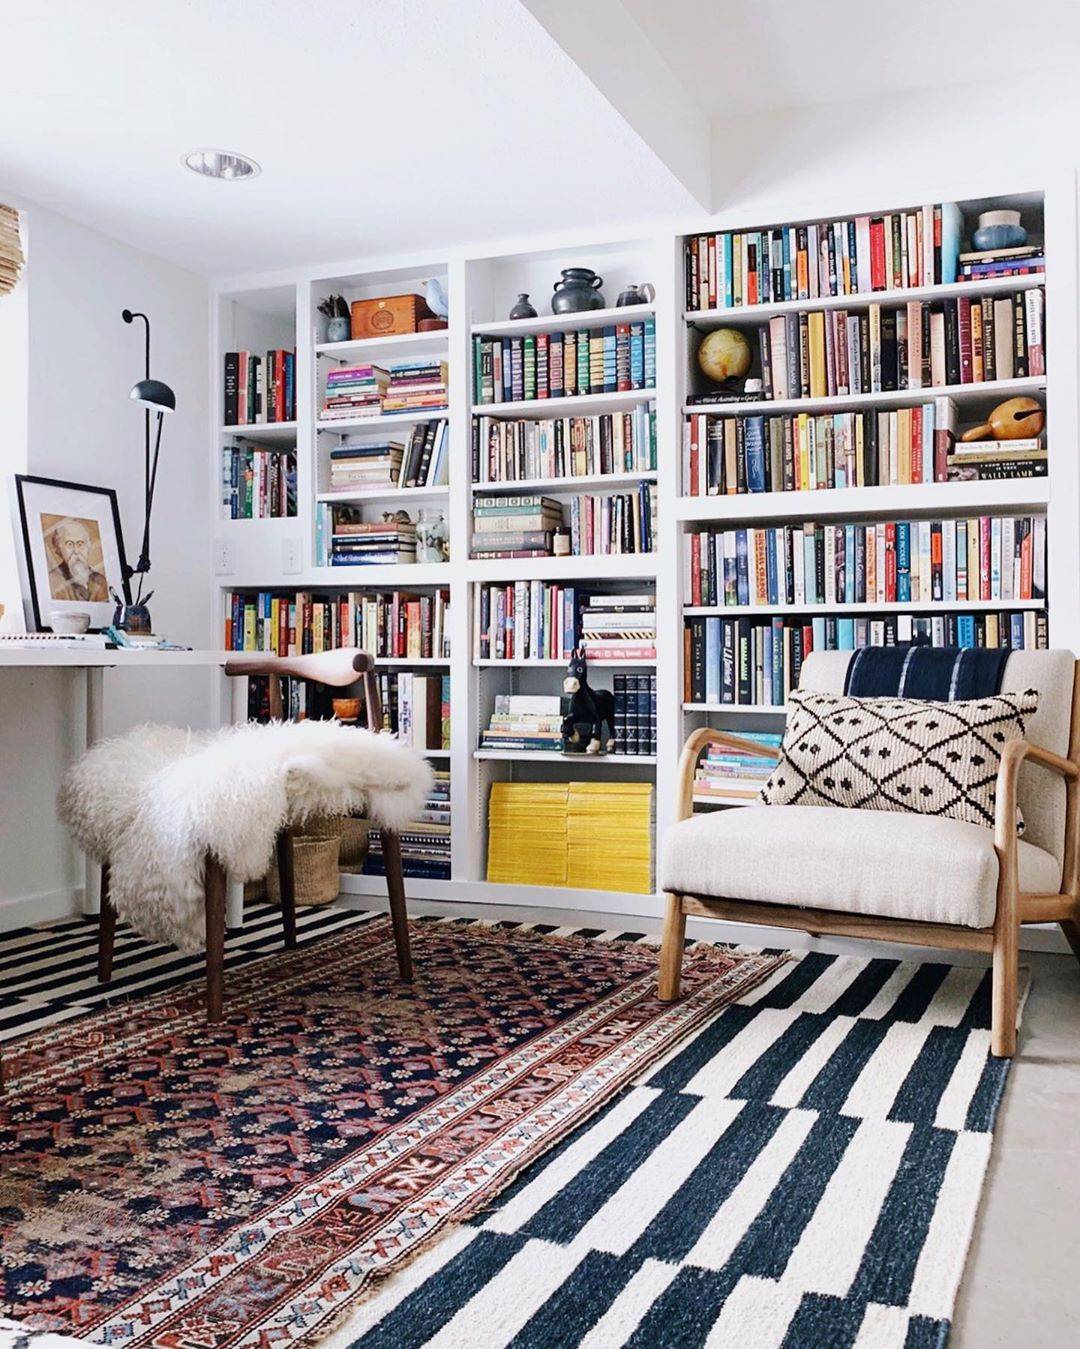 bibliotecas estanterias para libros @undecorated_home. Estantería para libros de obra, por @undecorated_home